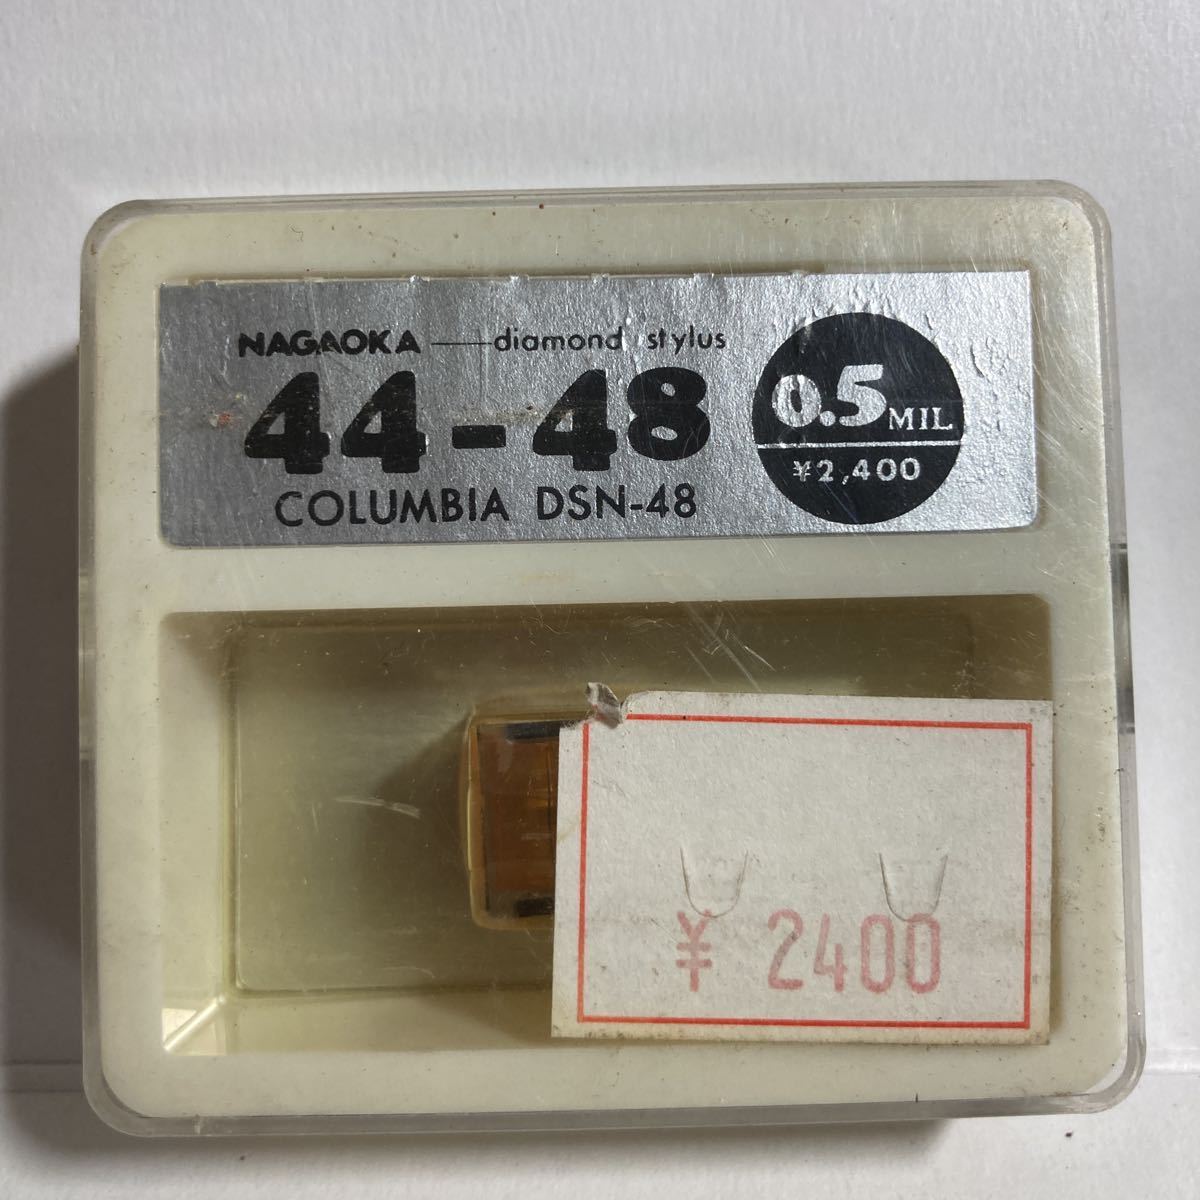 レコード針 ナガオカ 44-48 0.5MIL COLUMBIA DSN-48 倉庫整理品